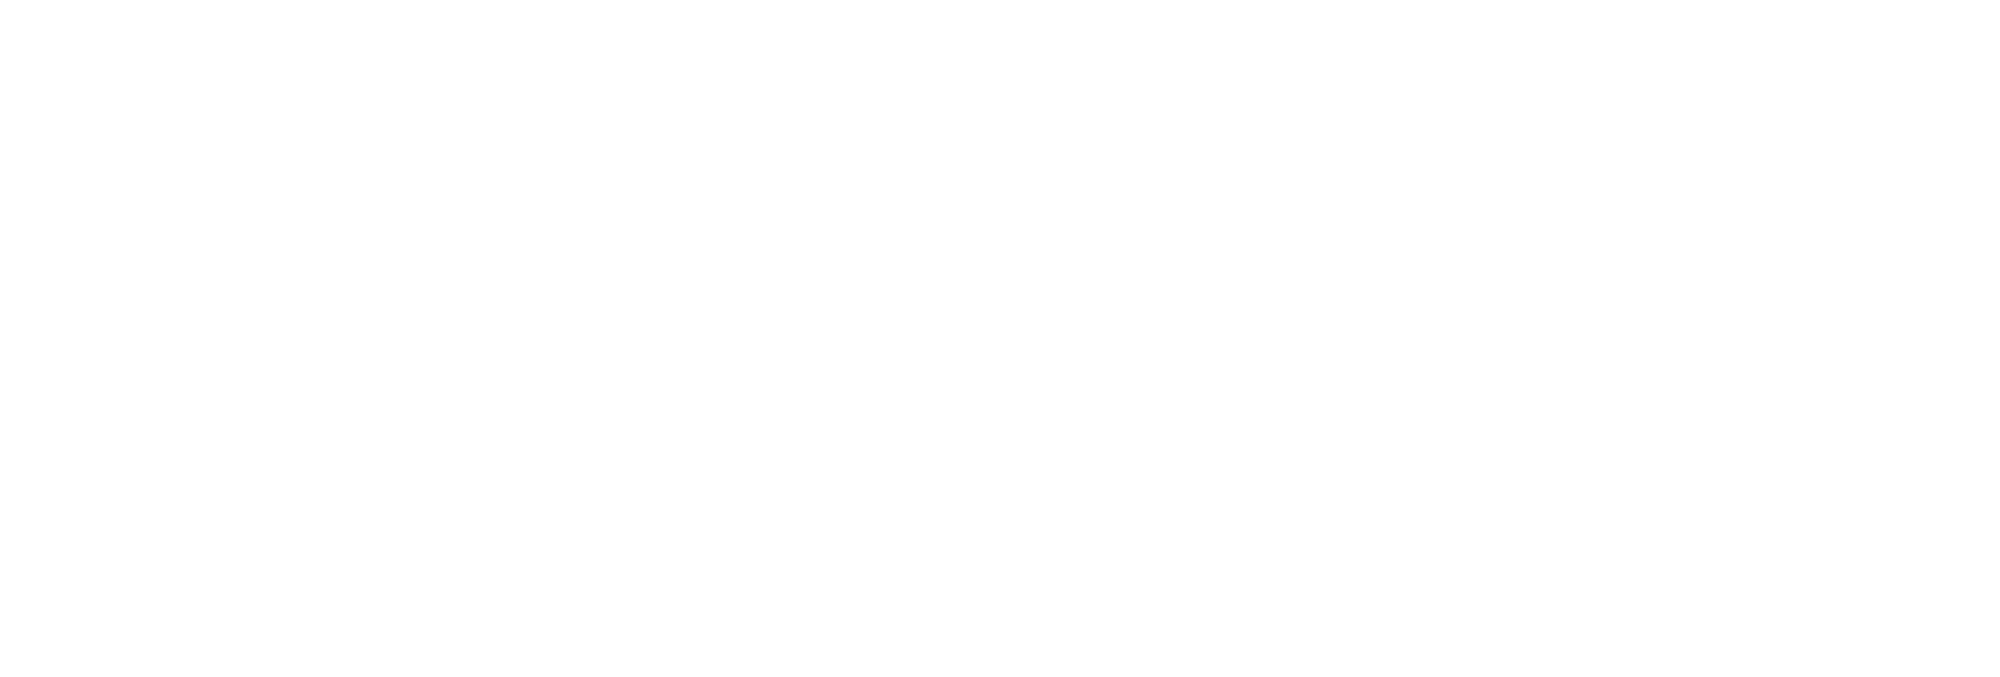 E2open-logo-reversed